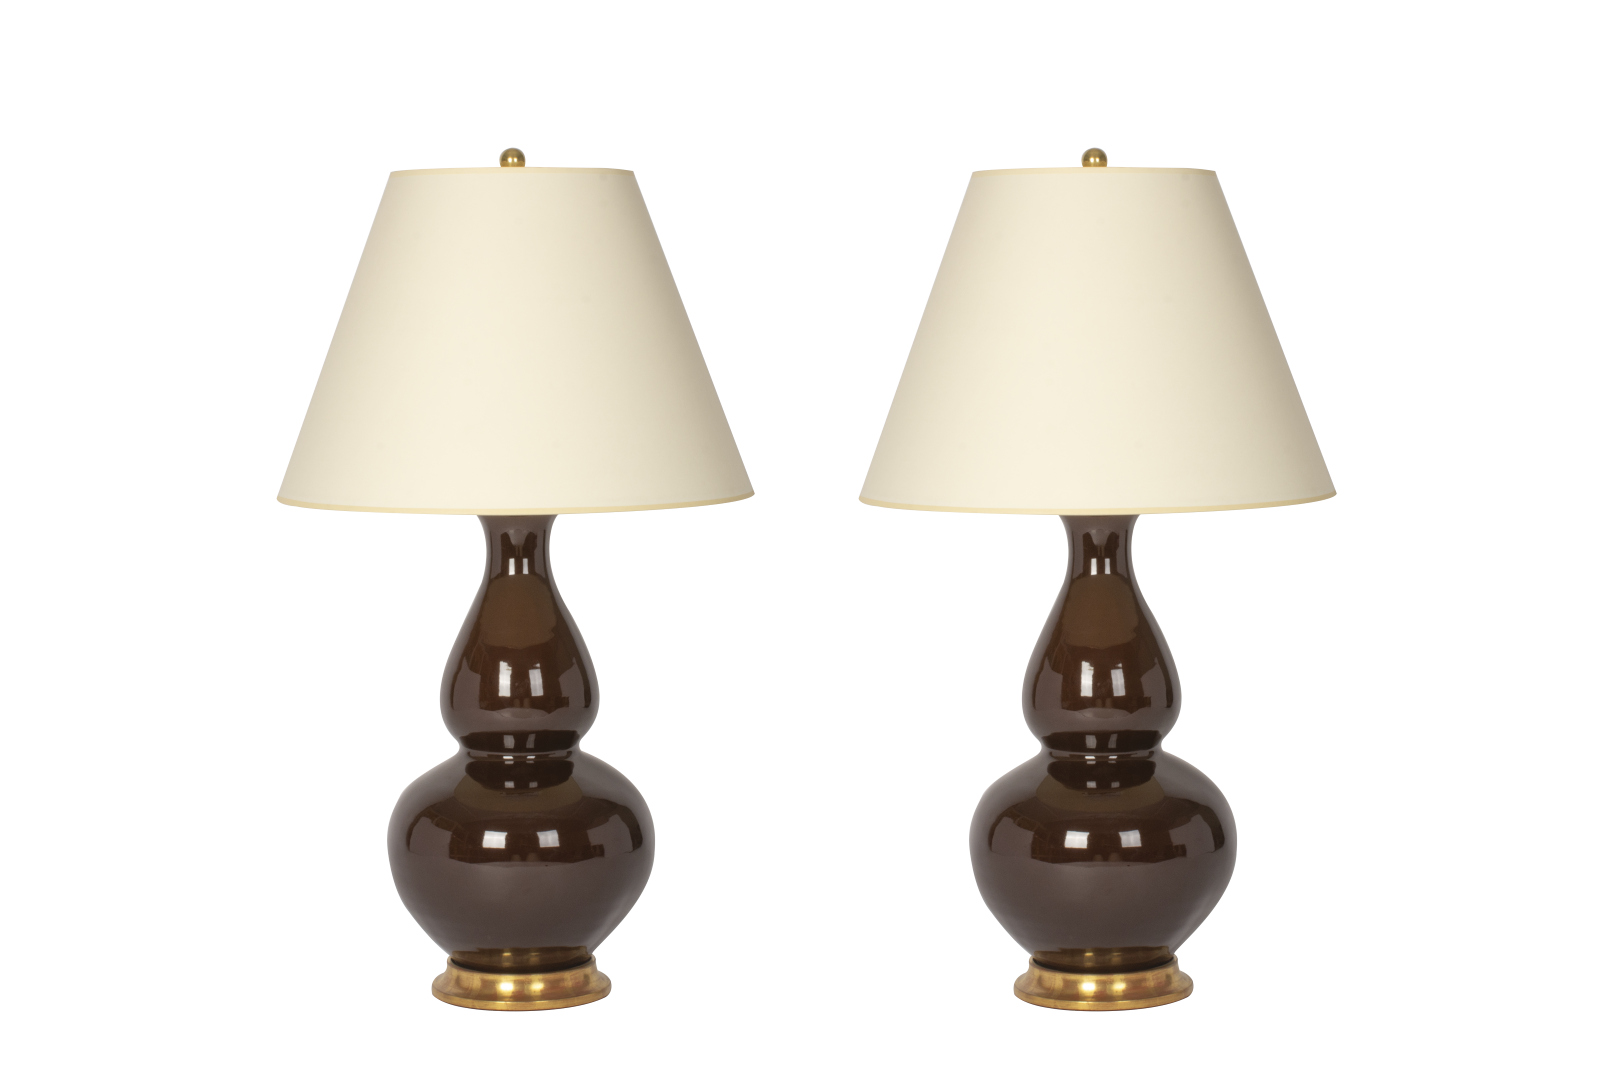 buitenspiegel Gelovige plank Aurora Lamp Pair in Espresso – Christopher Spitzmiller, Inc.